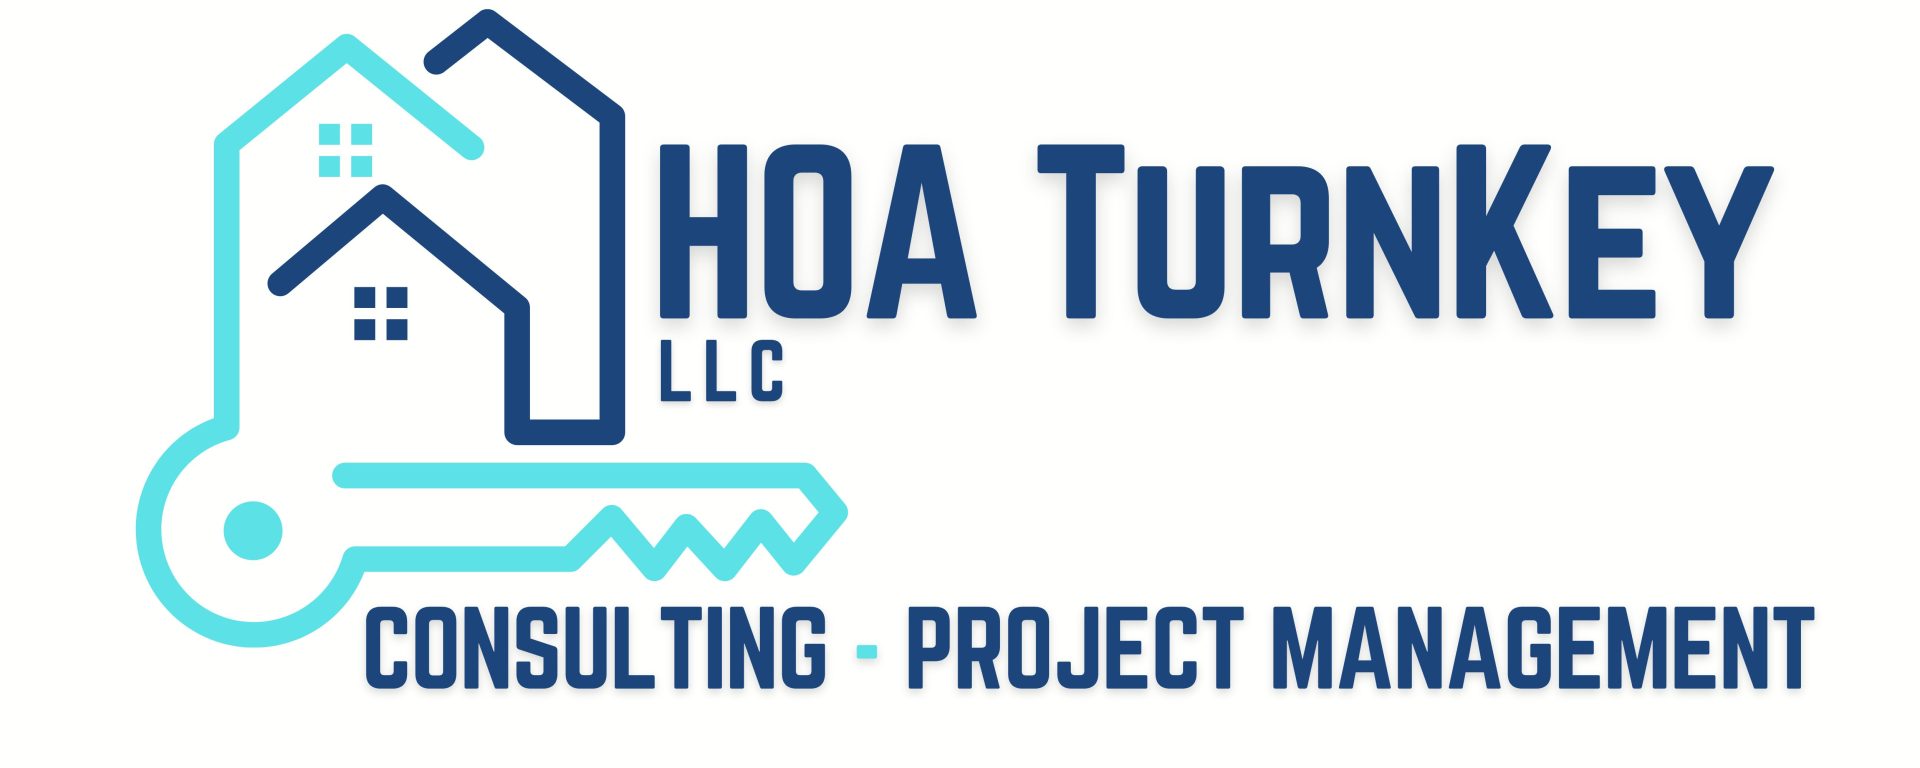 HOA Turnkey, LLC